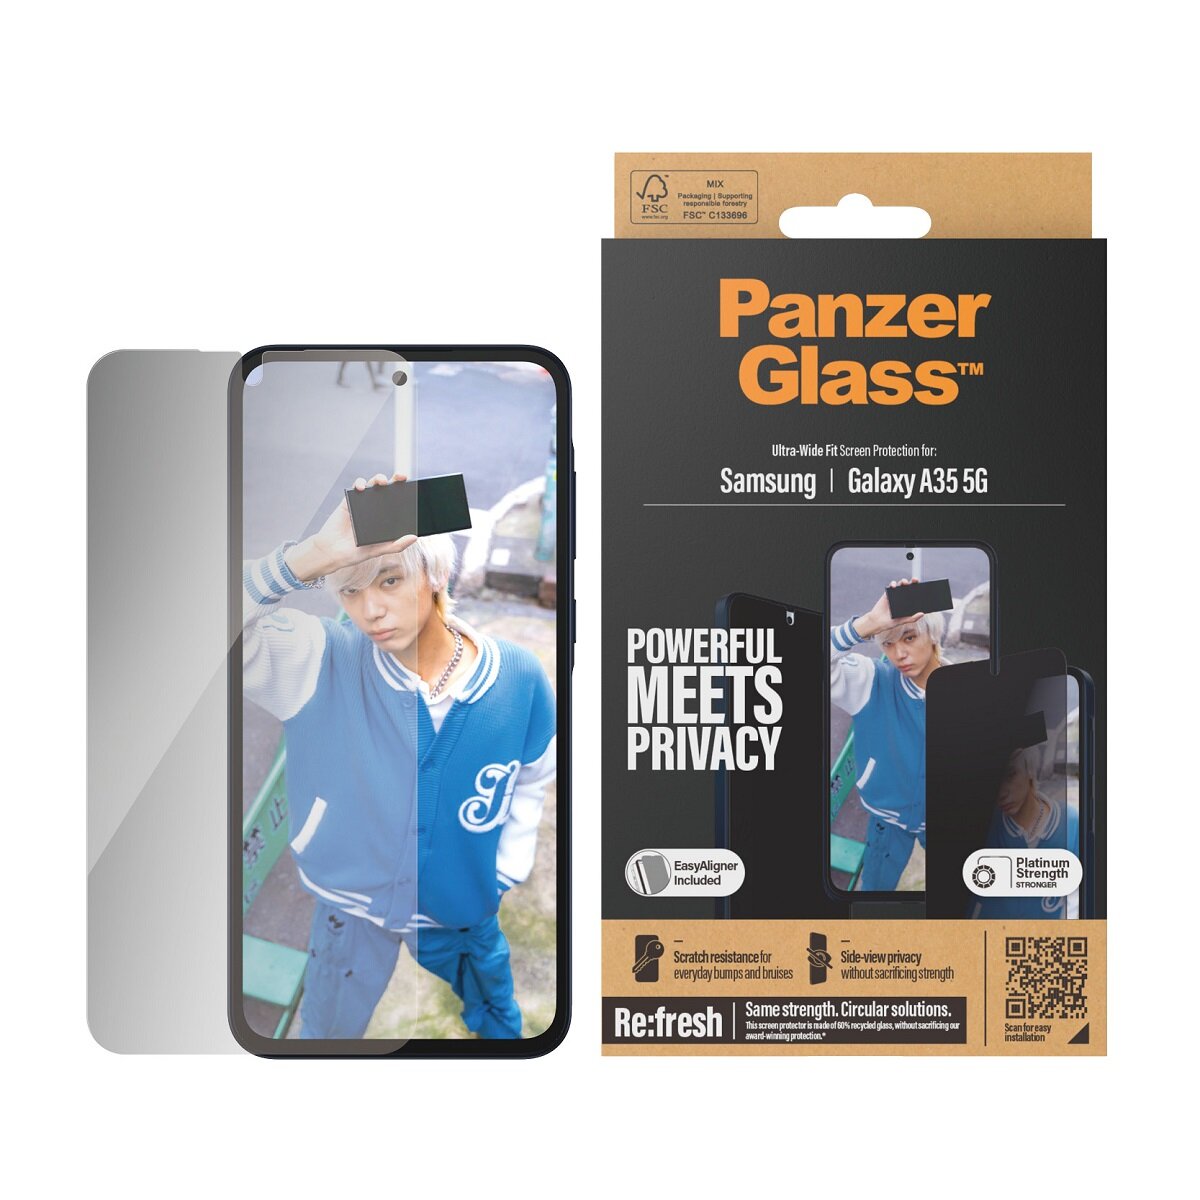 Szkło ochronne PanzerGlass Ultra-Wide Fit Privacy Galaxy A35 5G wraz z telefonem oraz opakowanie od frontu